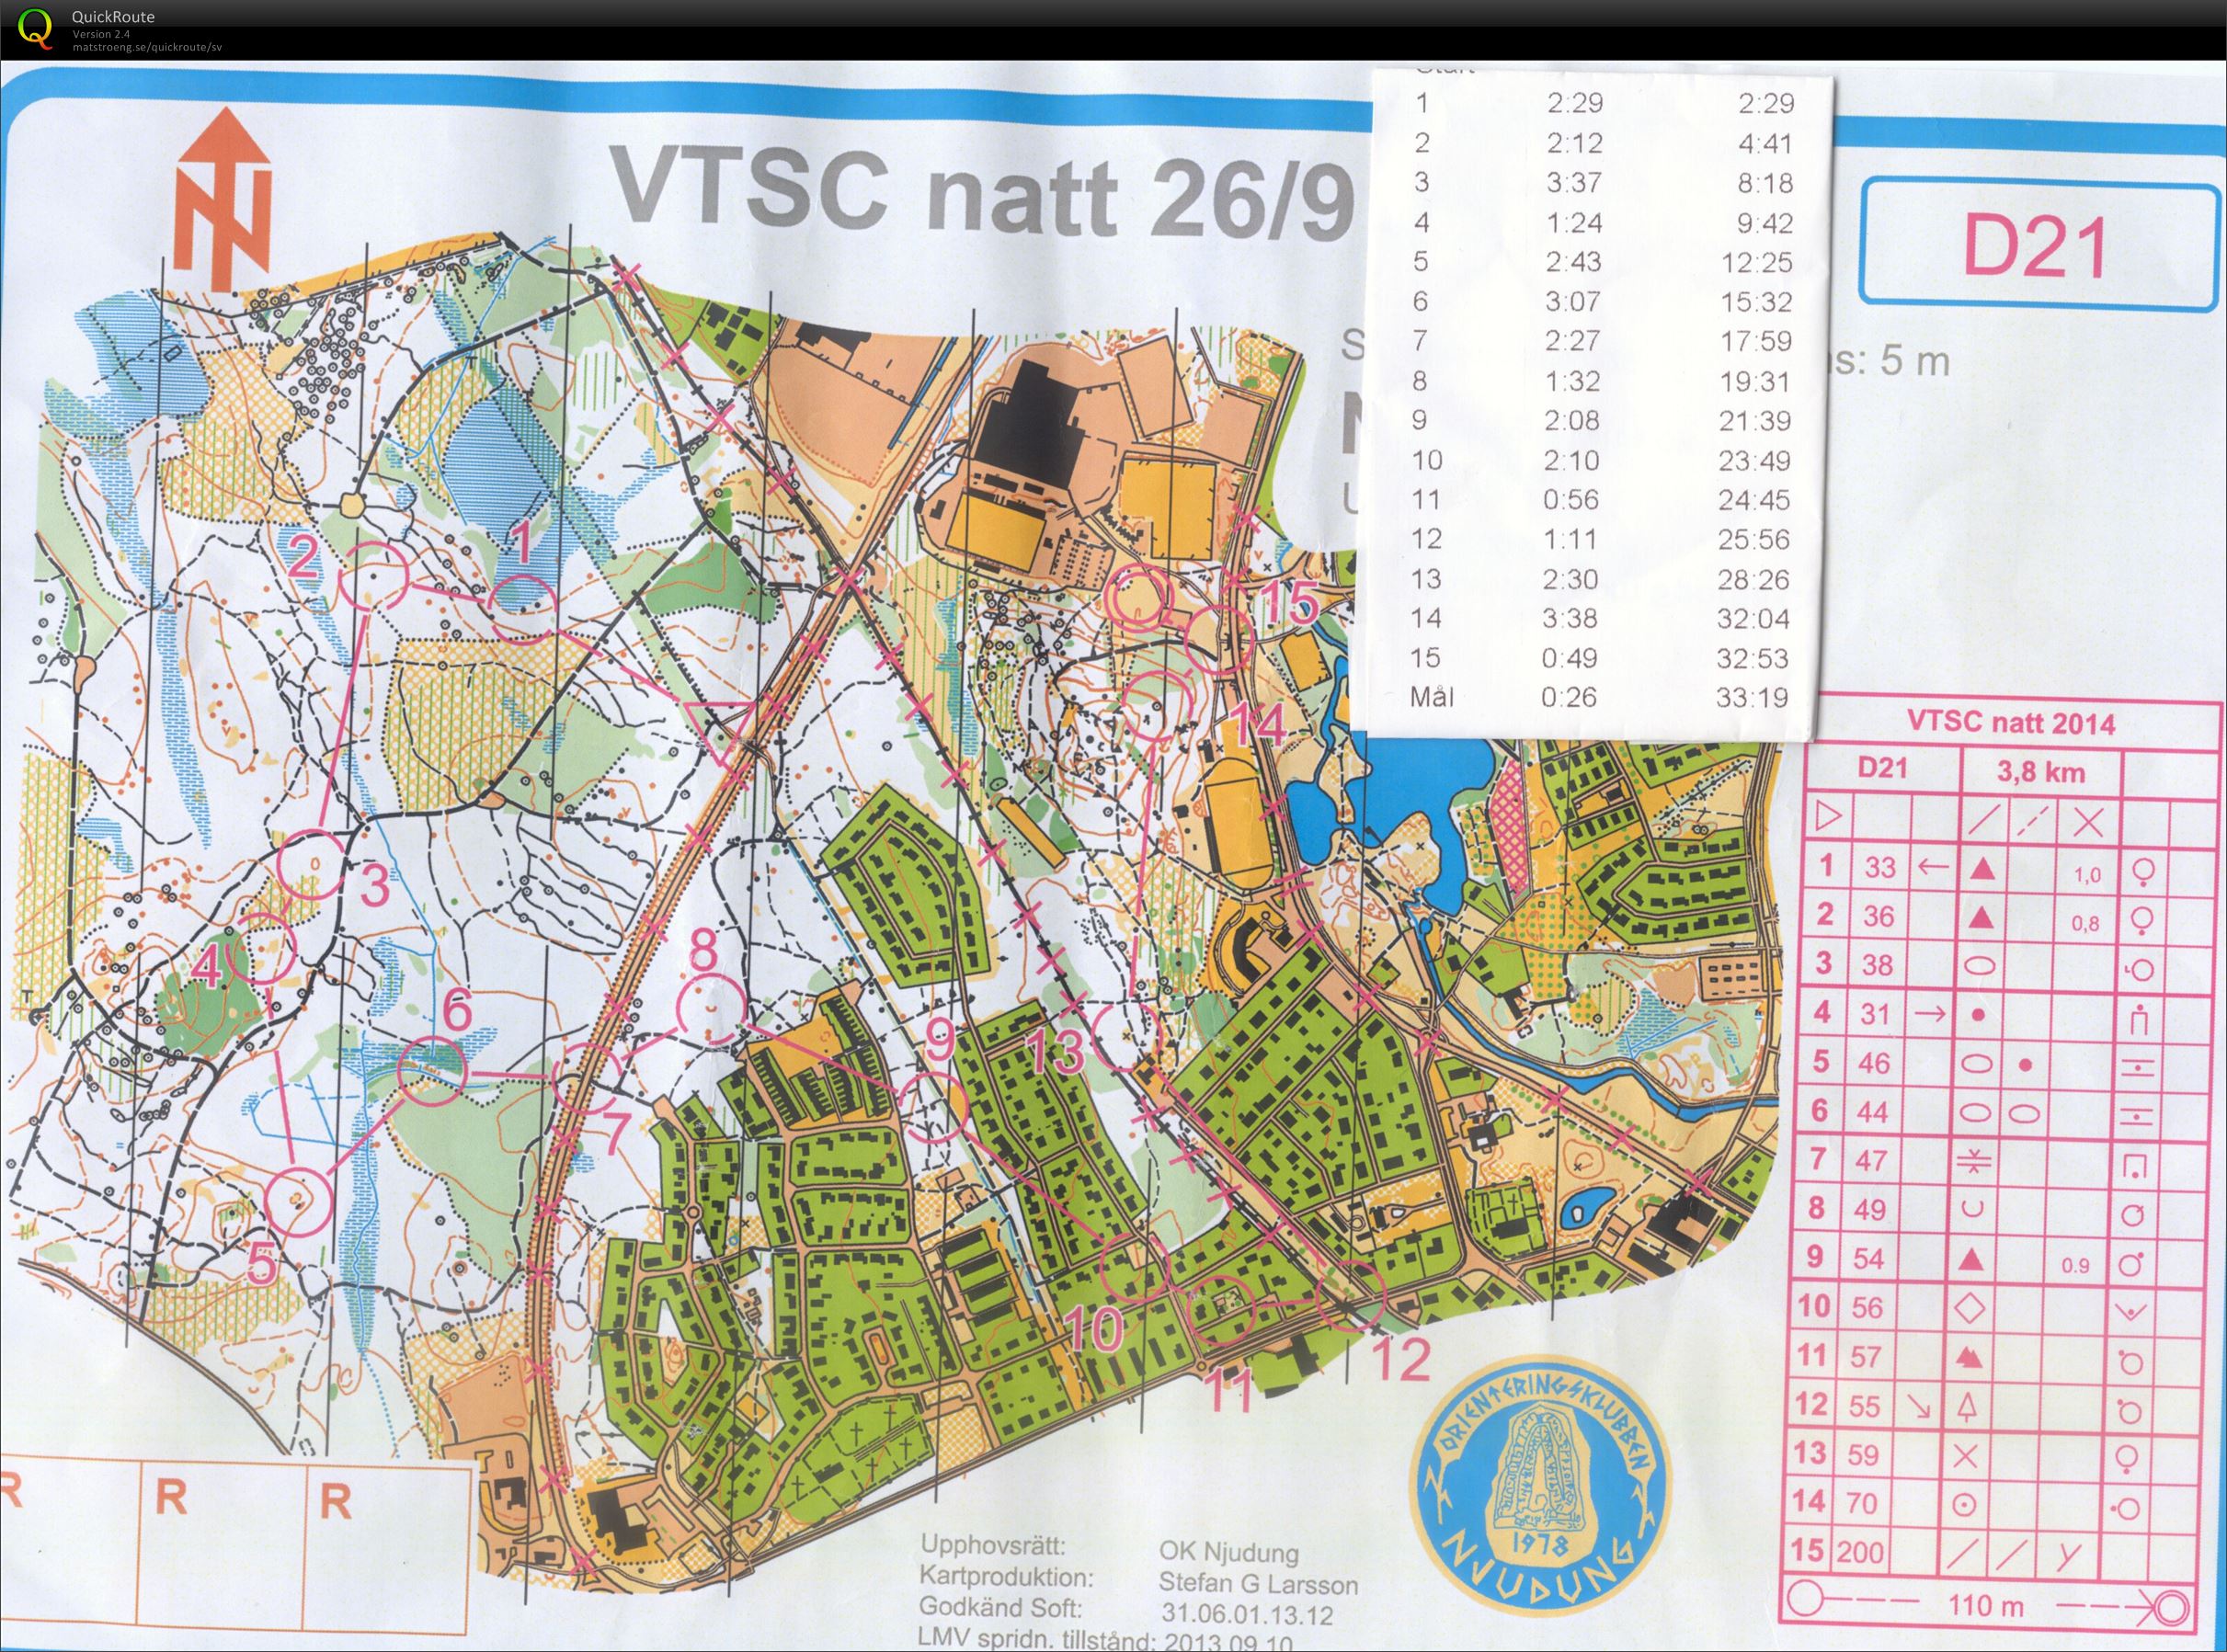 VTSC Natt (D21) (2014-09-26)